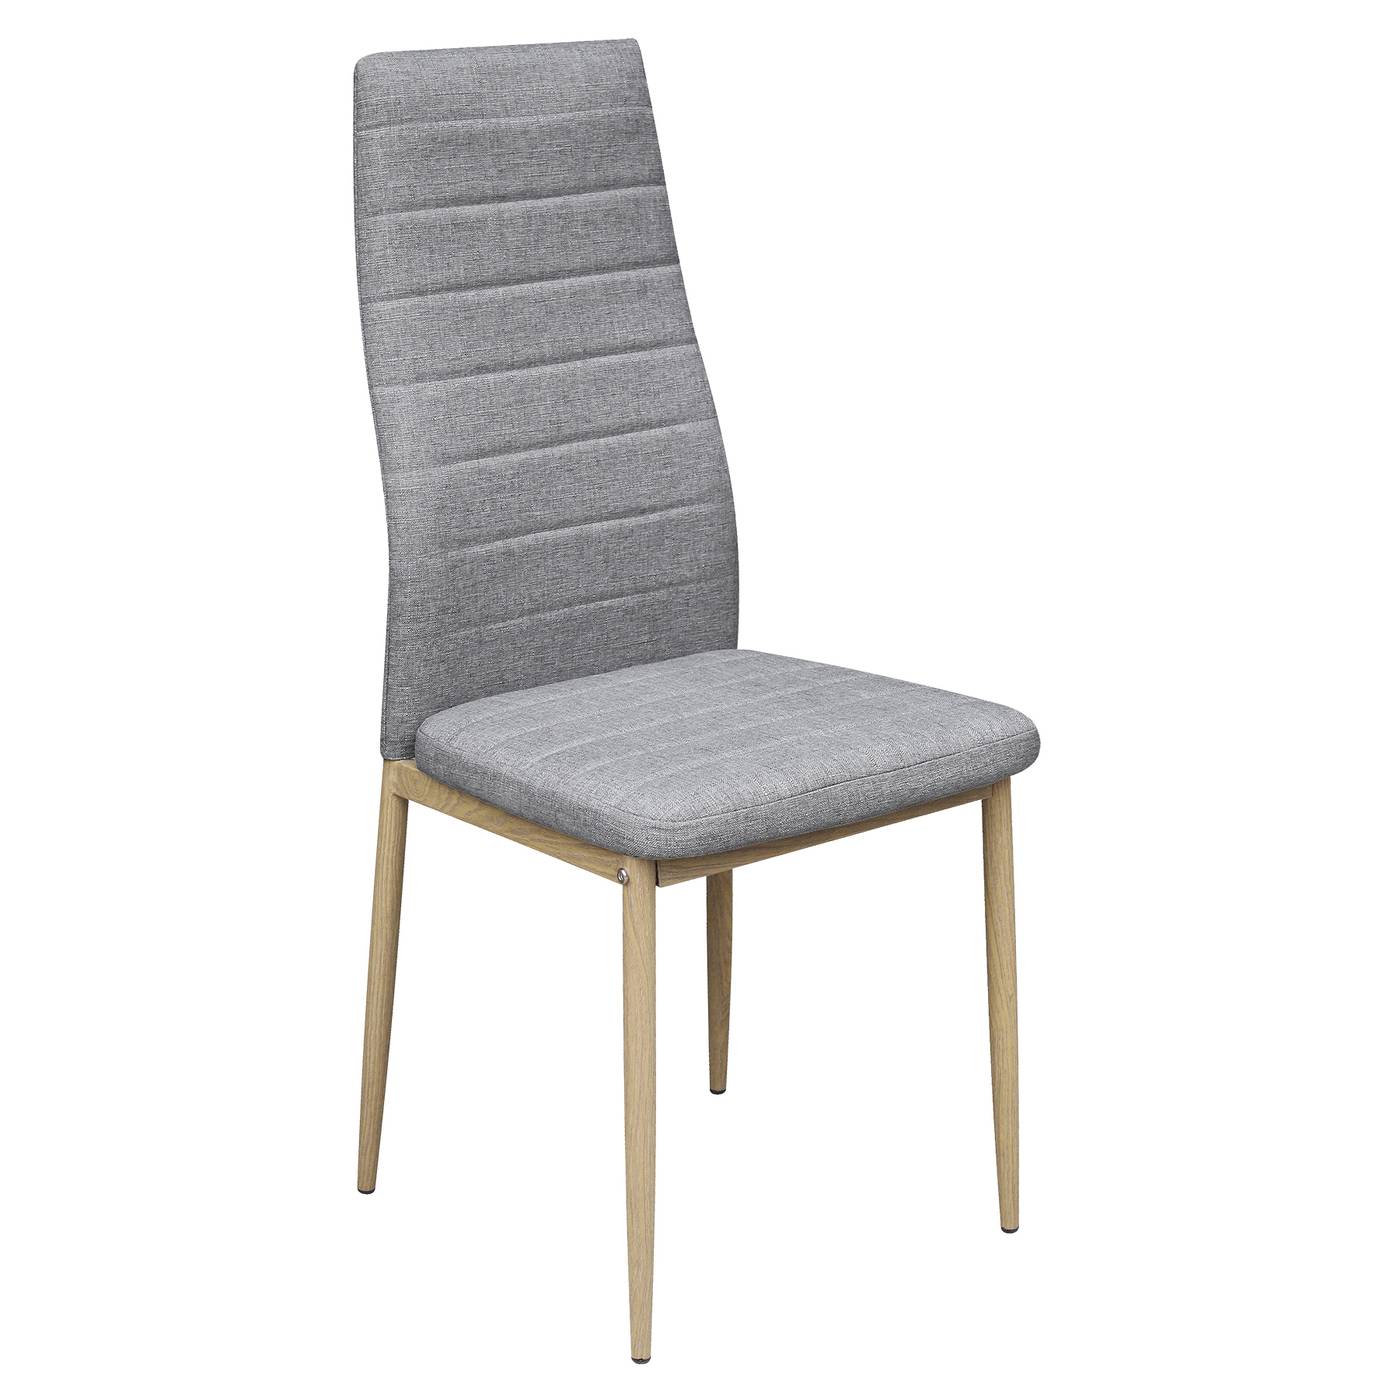 Silla de comedor. Patas de madera color roble. Respaldo y asiento tapizado en tela color gris.